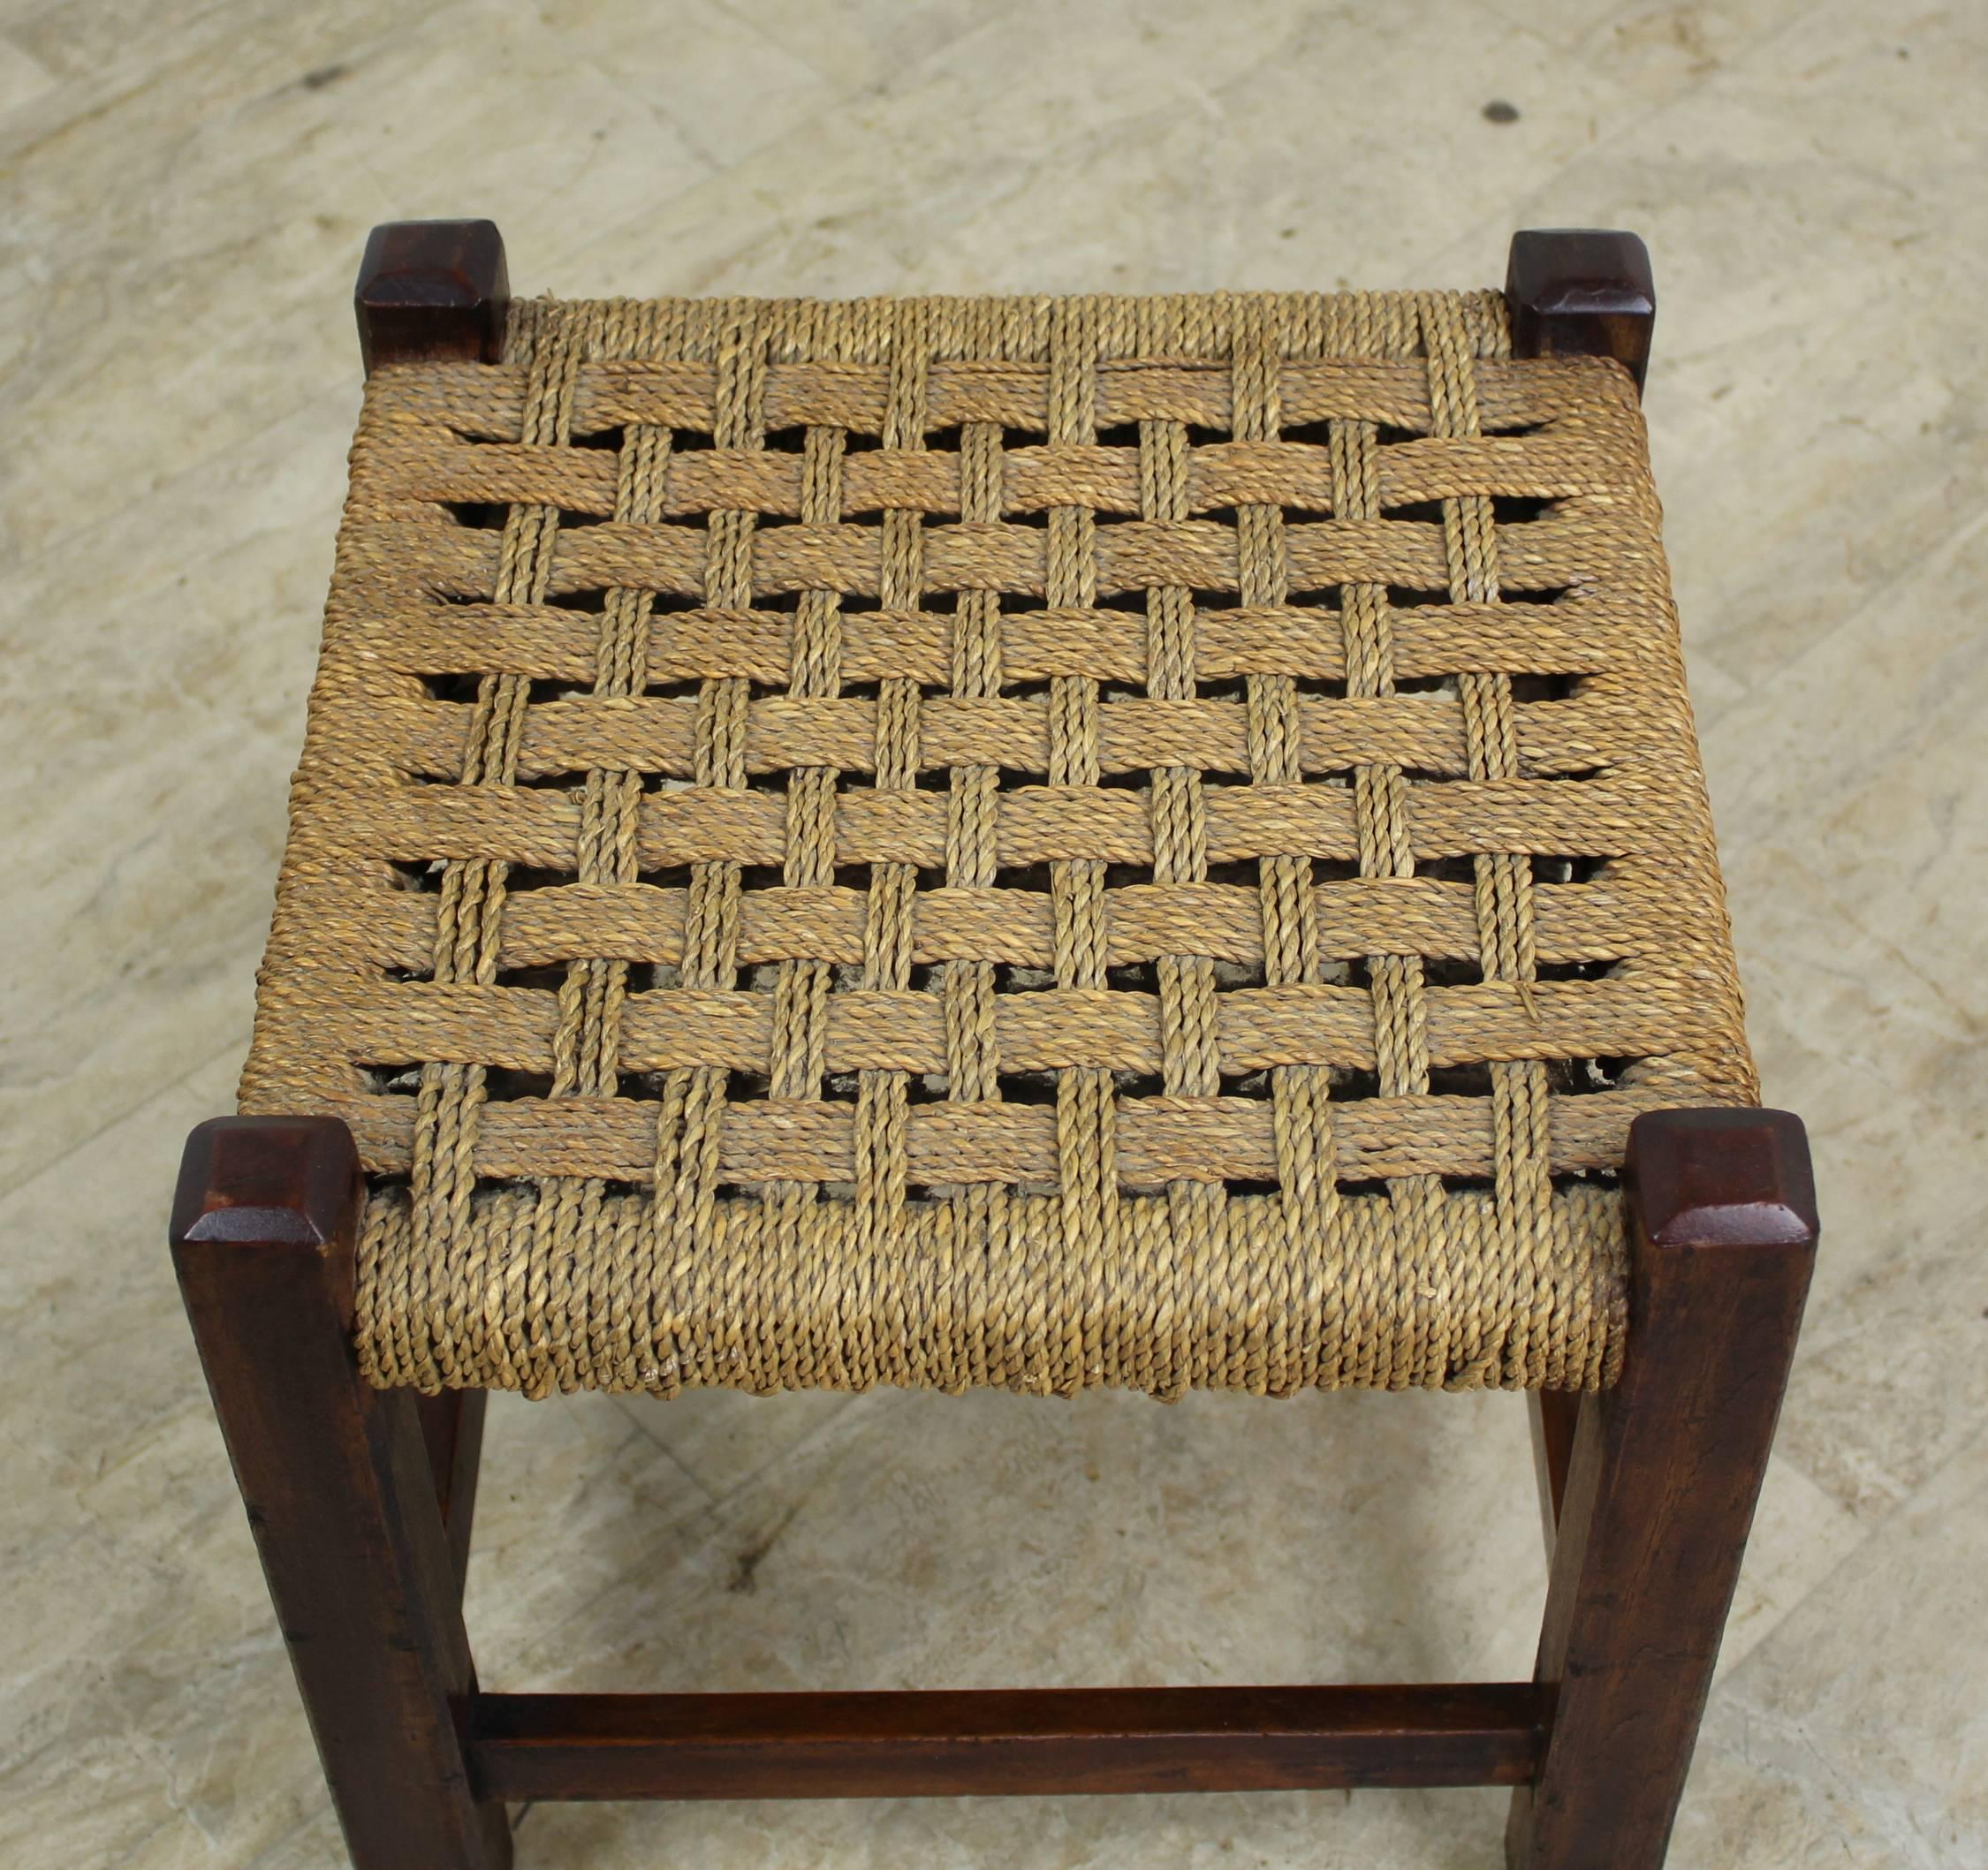 string in stool